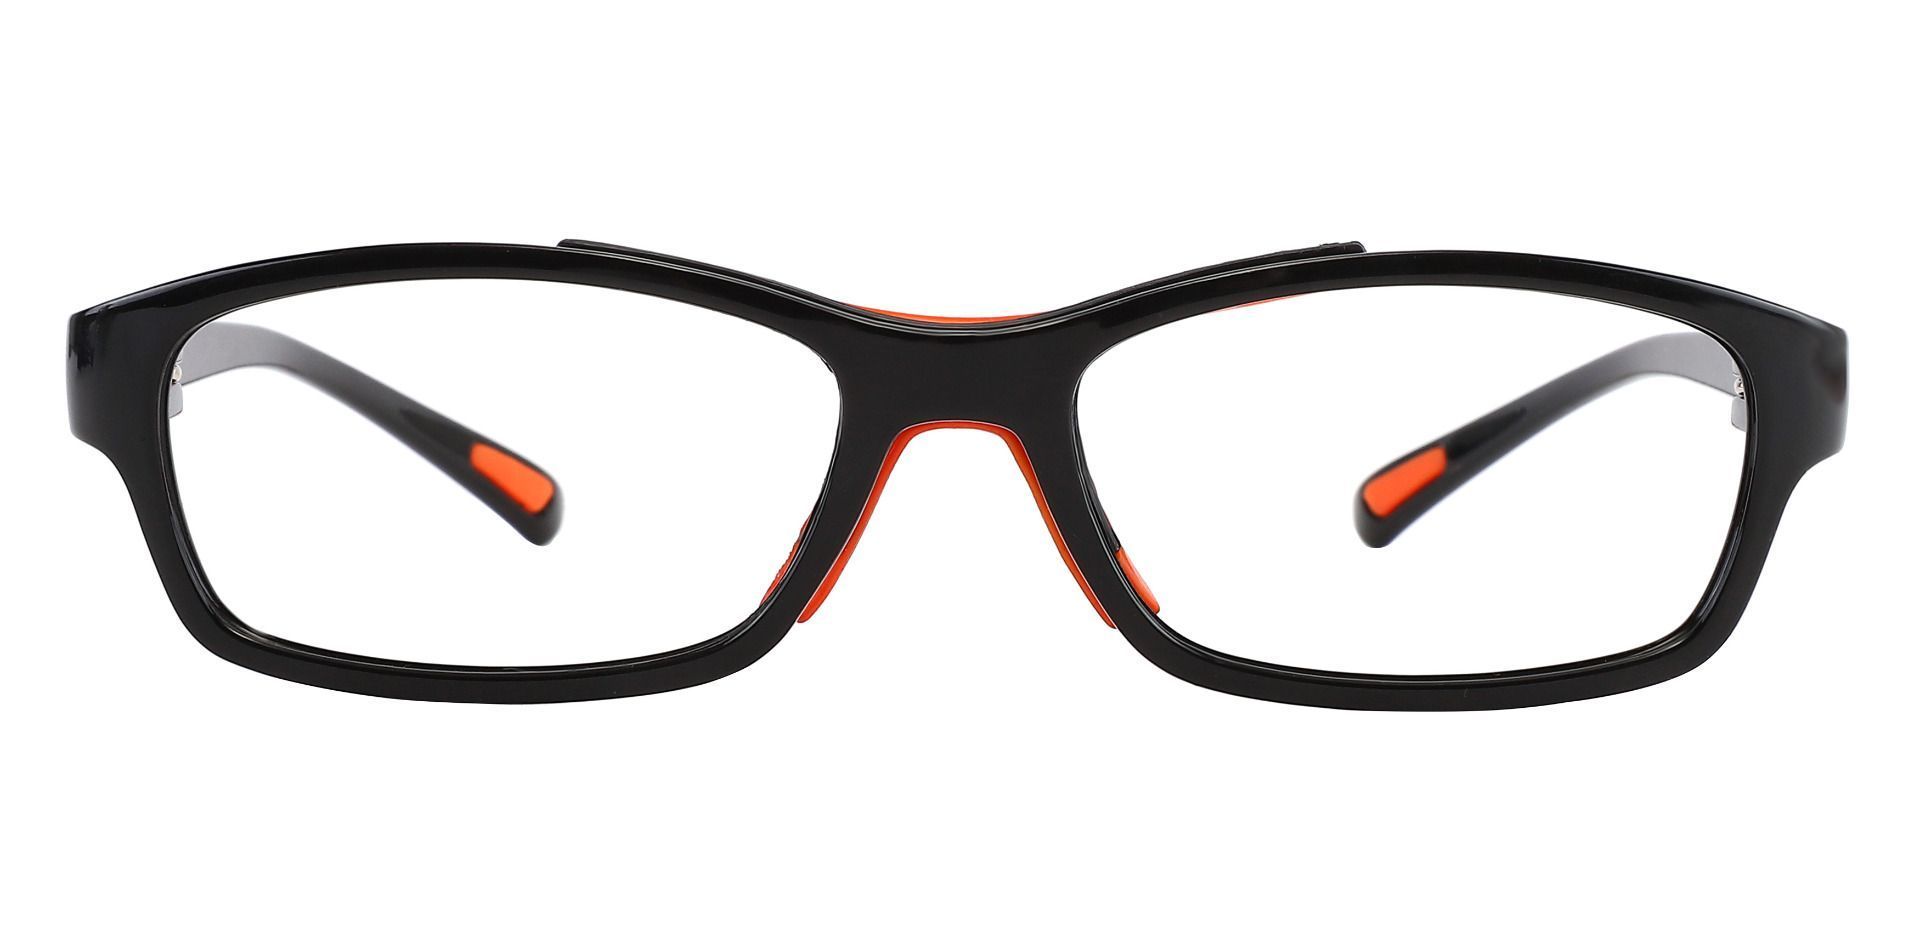 Glynn Rectangle Progressive Glasses - Black